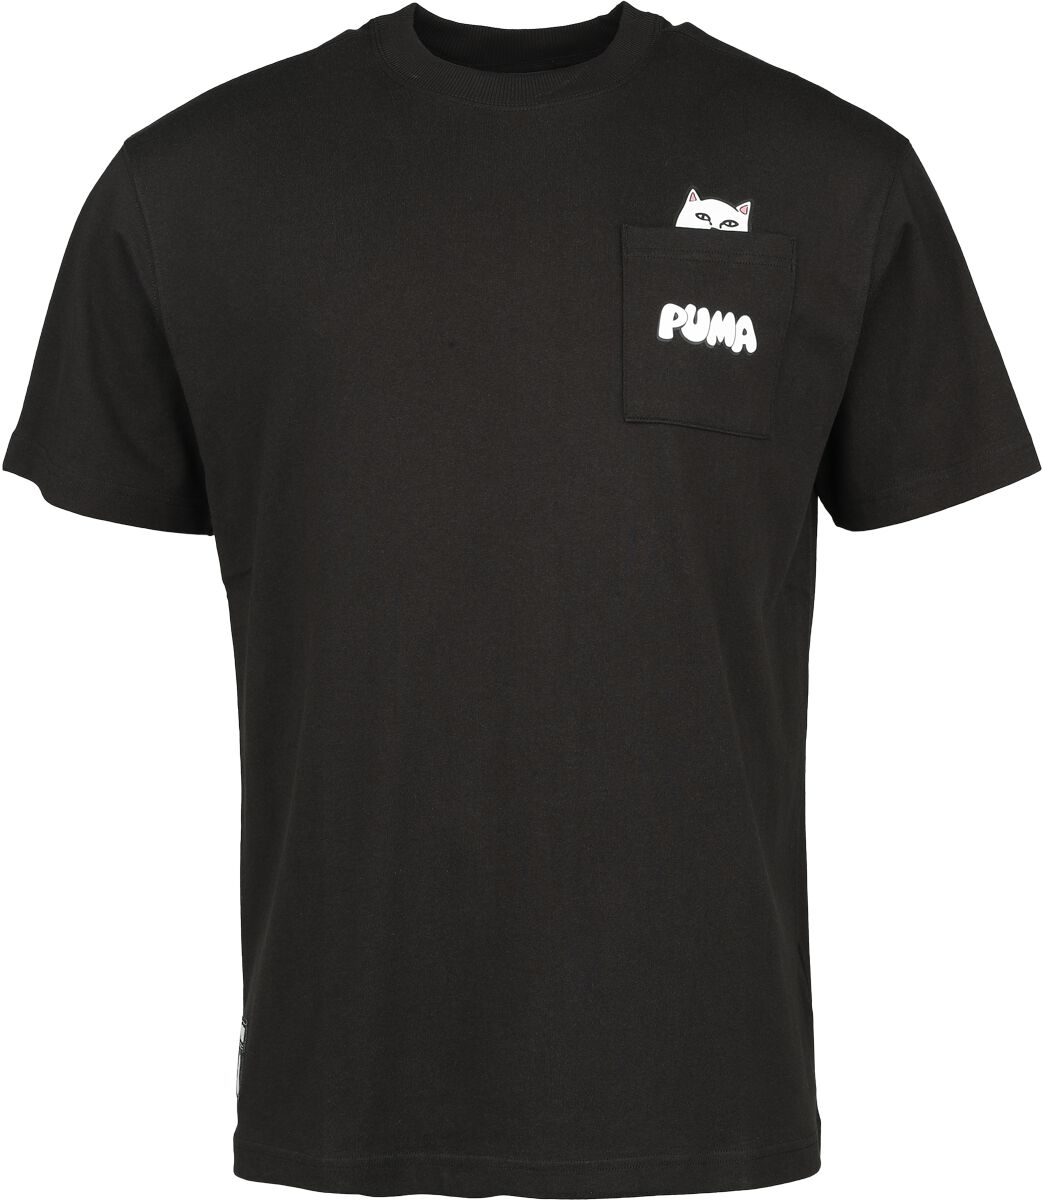 Puma PUMA x RIPNDIP Pocket Tee T-Shirt schwarz in XL